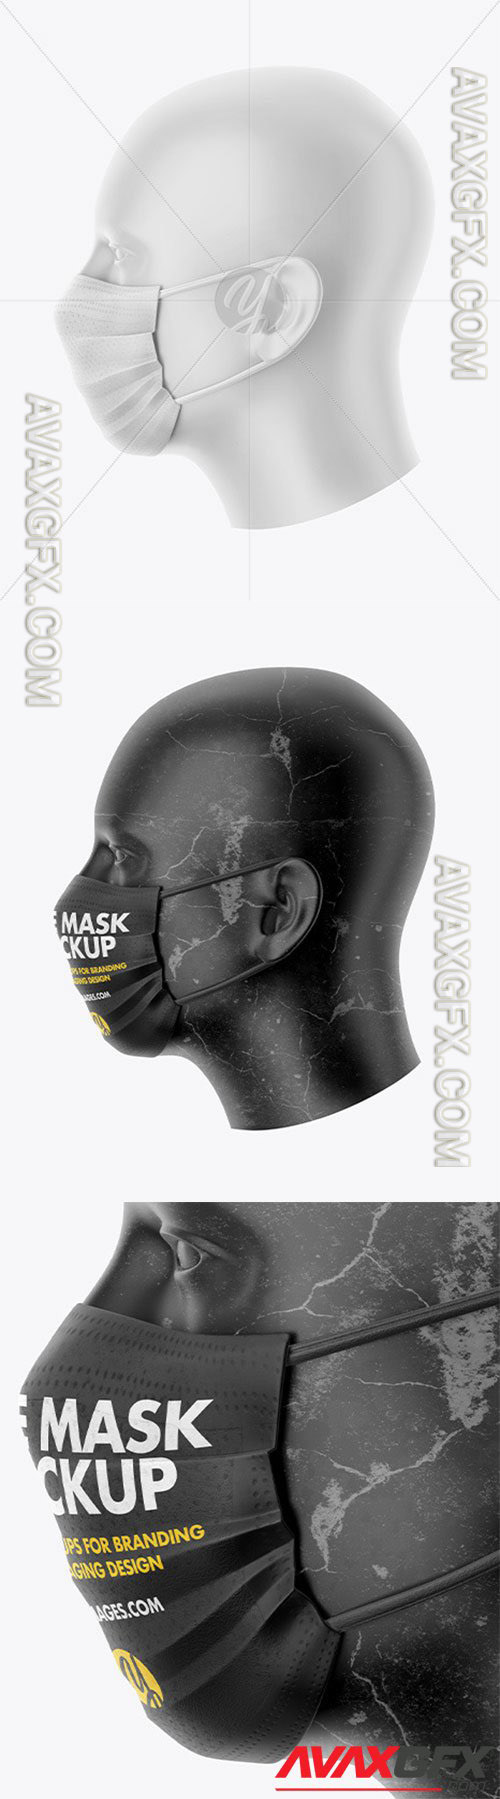 Face Mask Mockup 61129